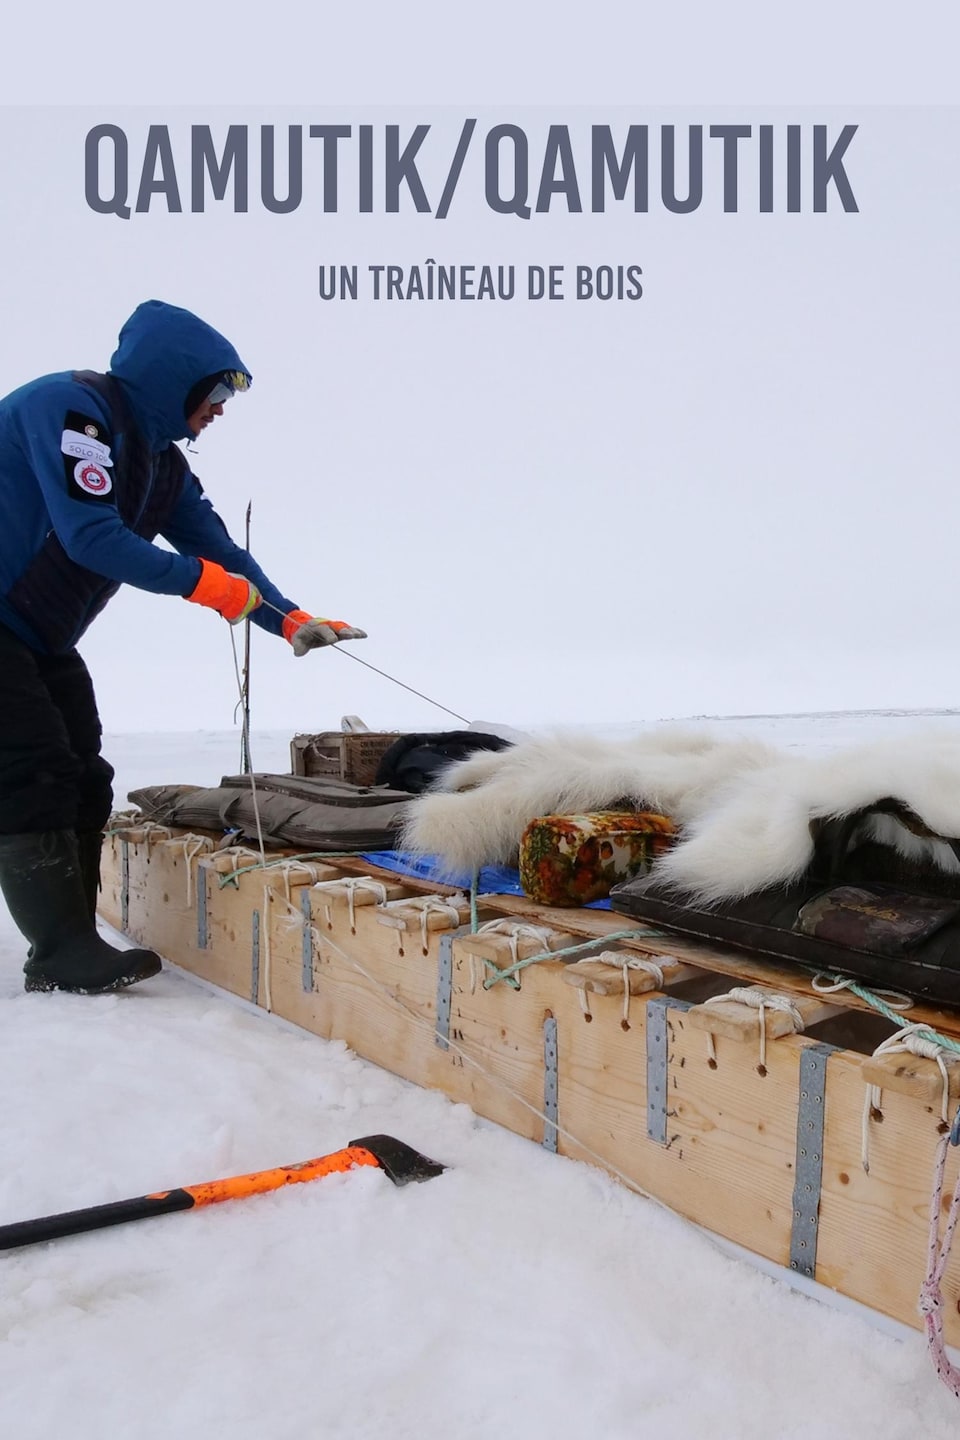 Le mot en inuktitut qamutik et sa traduction  un traîneau de bois écrit sur une photo de Devon Manik en train d’atteler son traîneau avec son équipement, au mois de juin à Resolute Bay, dans le nord du Nunavut.